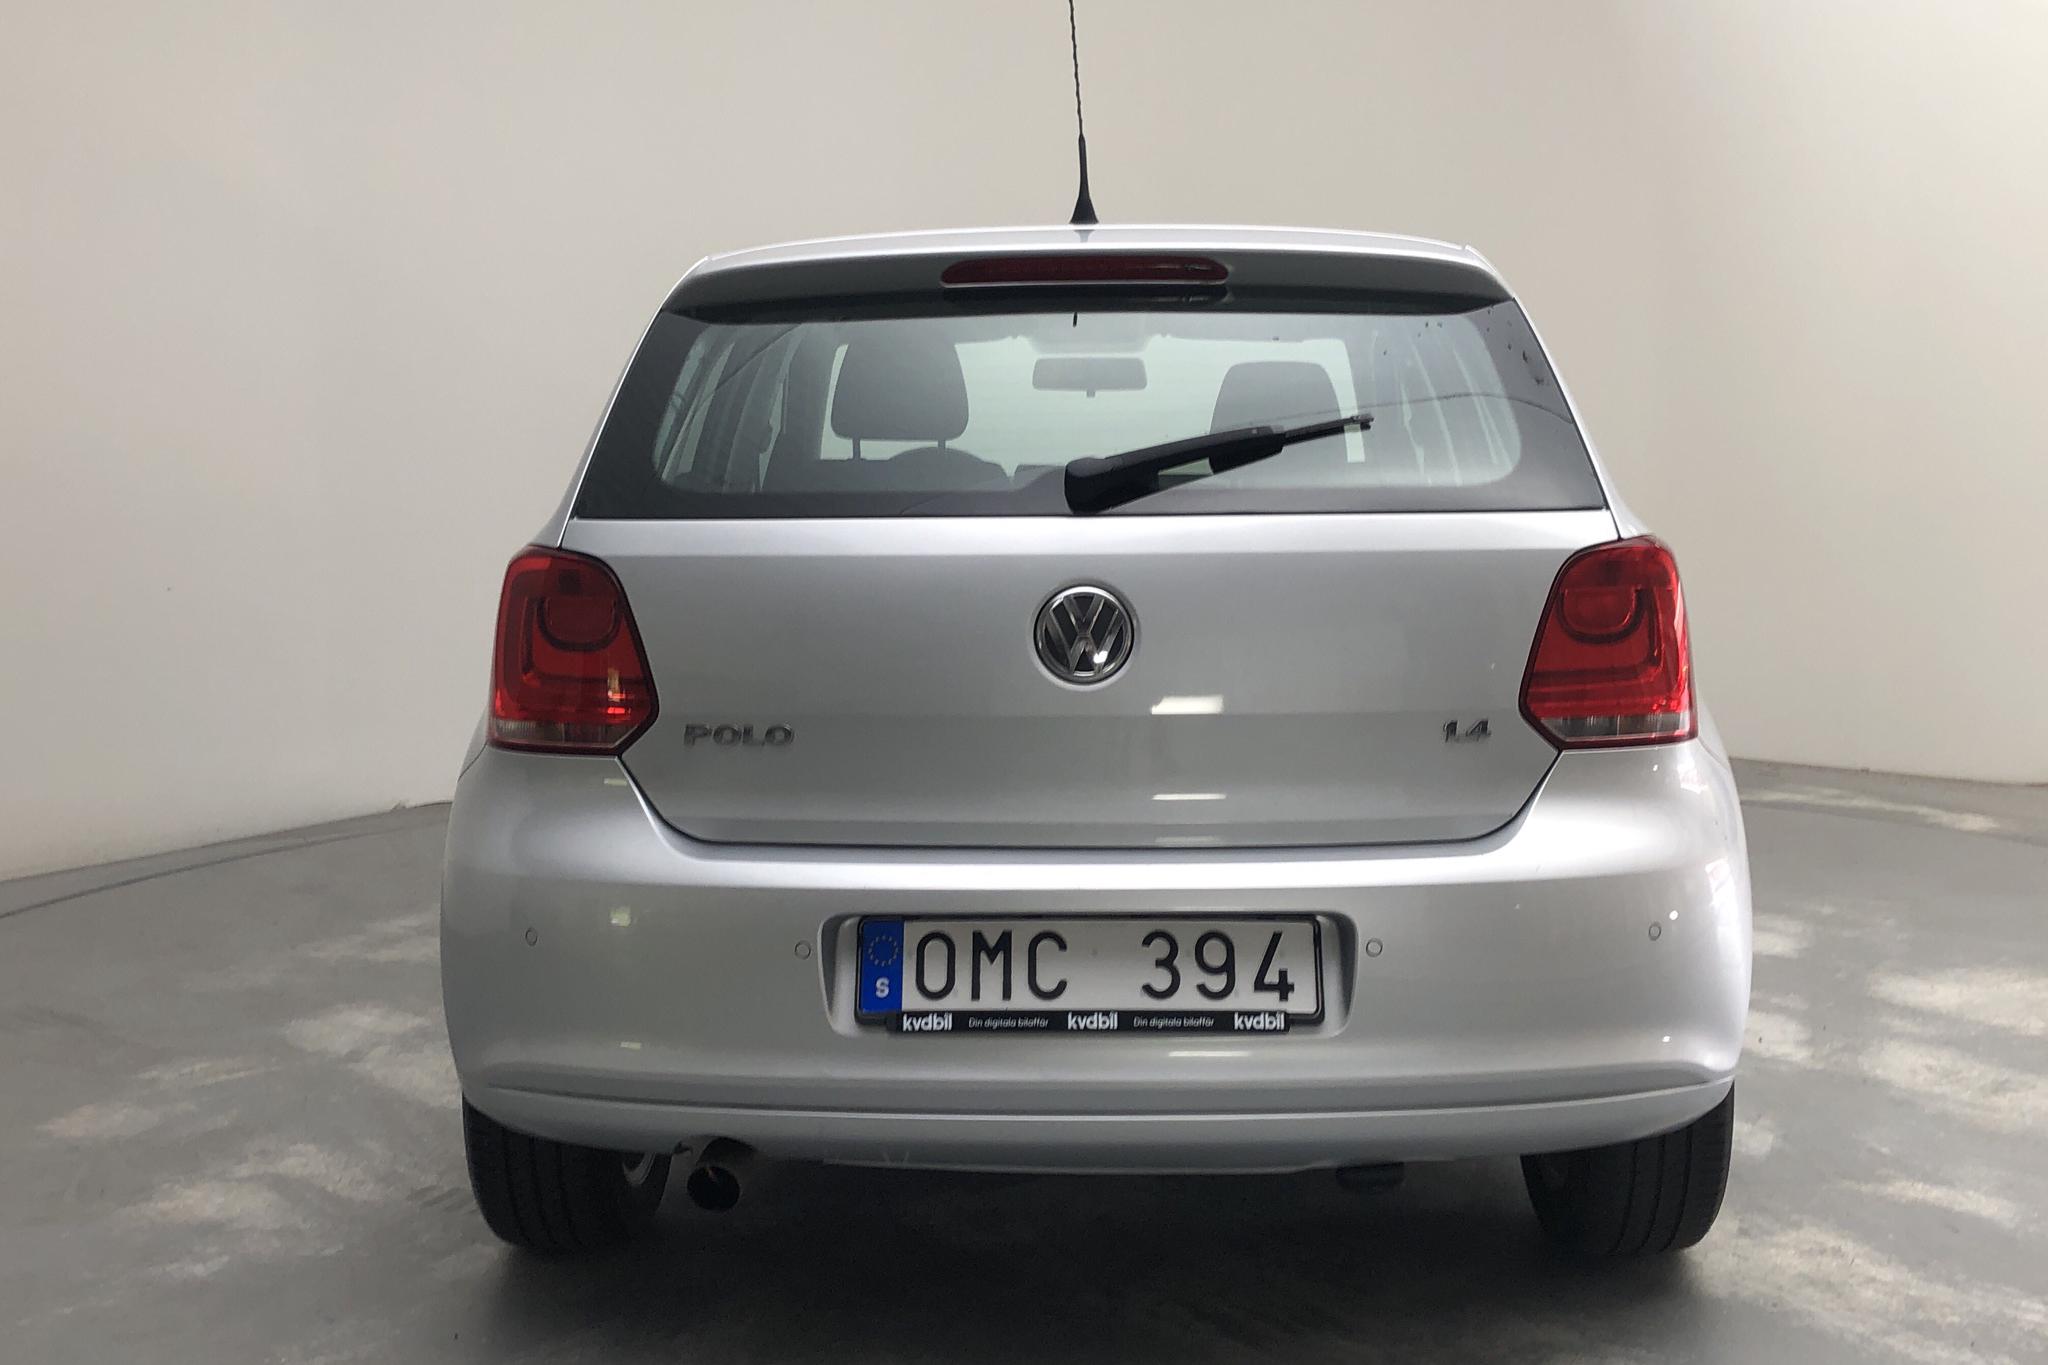 VW Polo 1.4 5dr (85hk) - 108 230 km - Automatic - silver - 2011